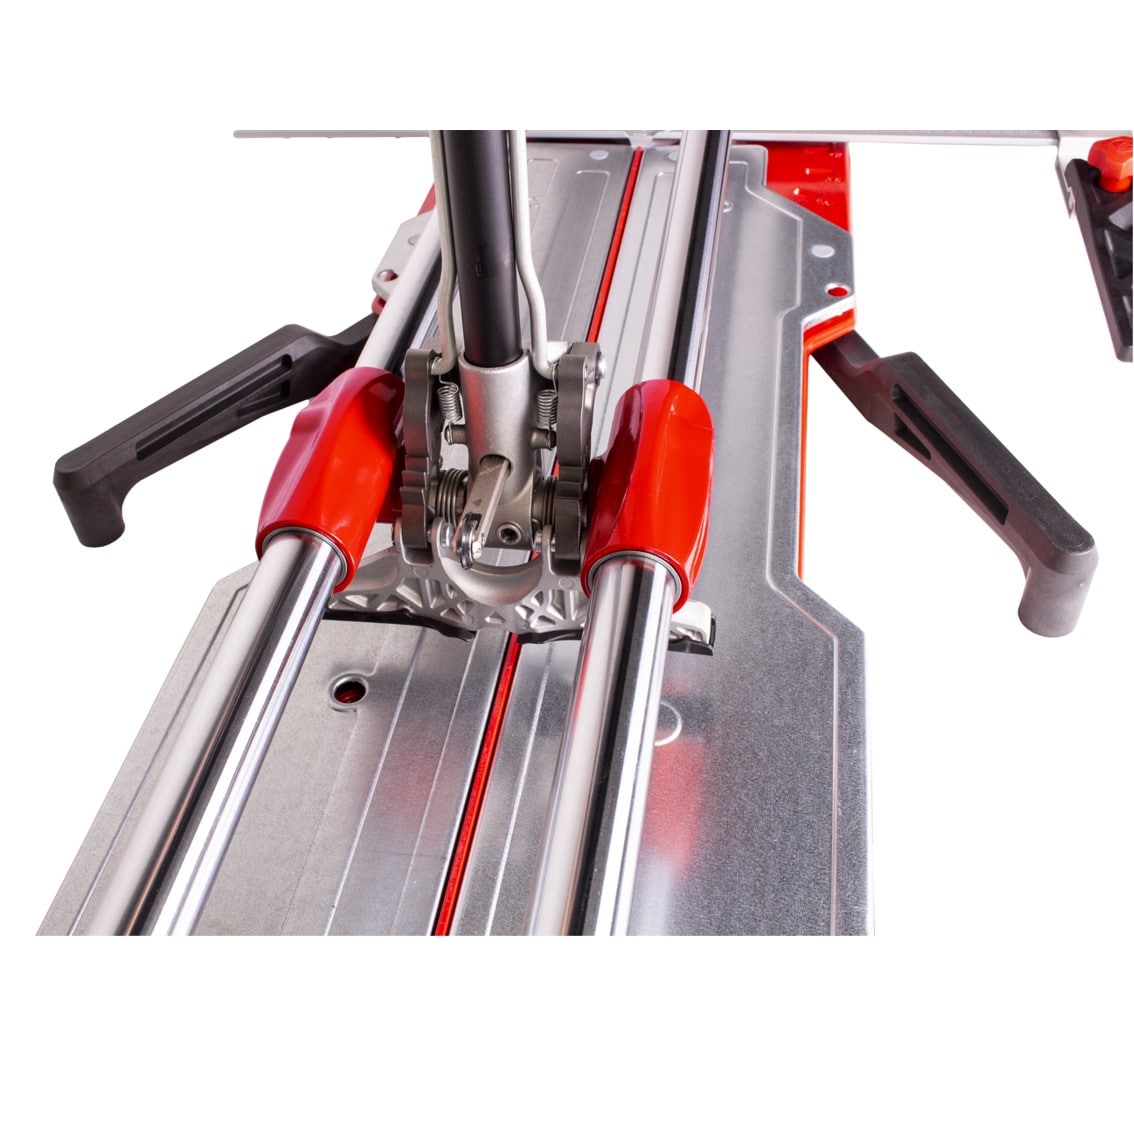 Máquina para cortar azulejo modelo tx-max 1020 da Rubi